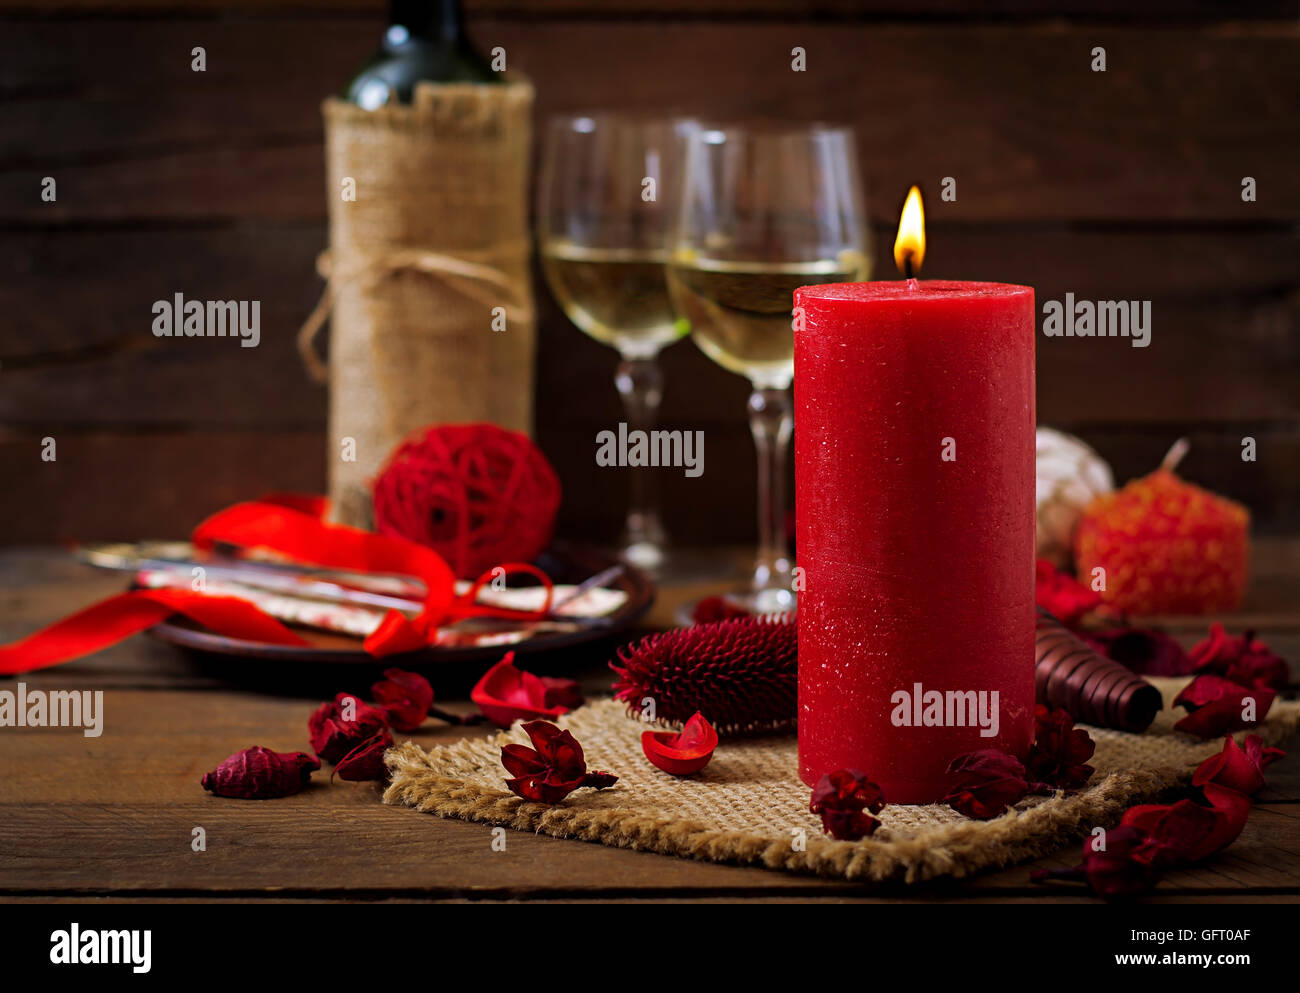 Le dîner romantique, bougies, vin et de décor Banque D'Images